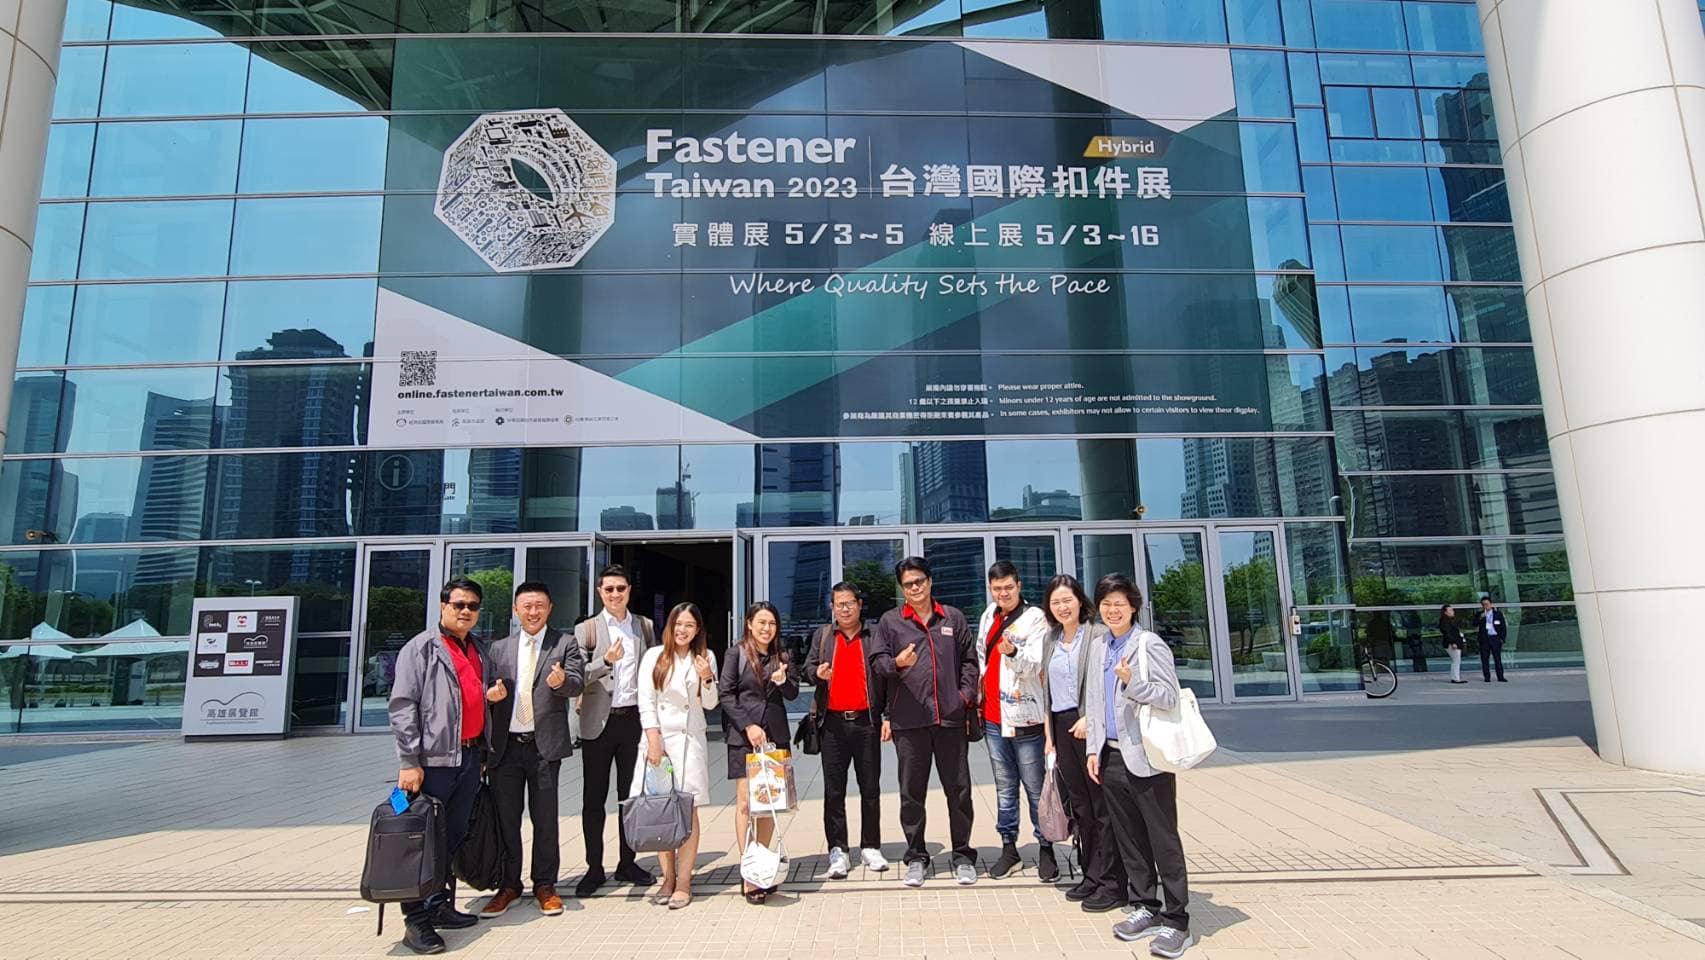 สมาคม THAI SUBCON  นำคณะสมาชิกร่วมชมงานแสดงสินค้าน็อต สกรู และสลักภัณฑ์ที่เมืองเกาสง, ไต้หวัน  ในงาน 2023 Taiwan International Fastener Show